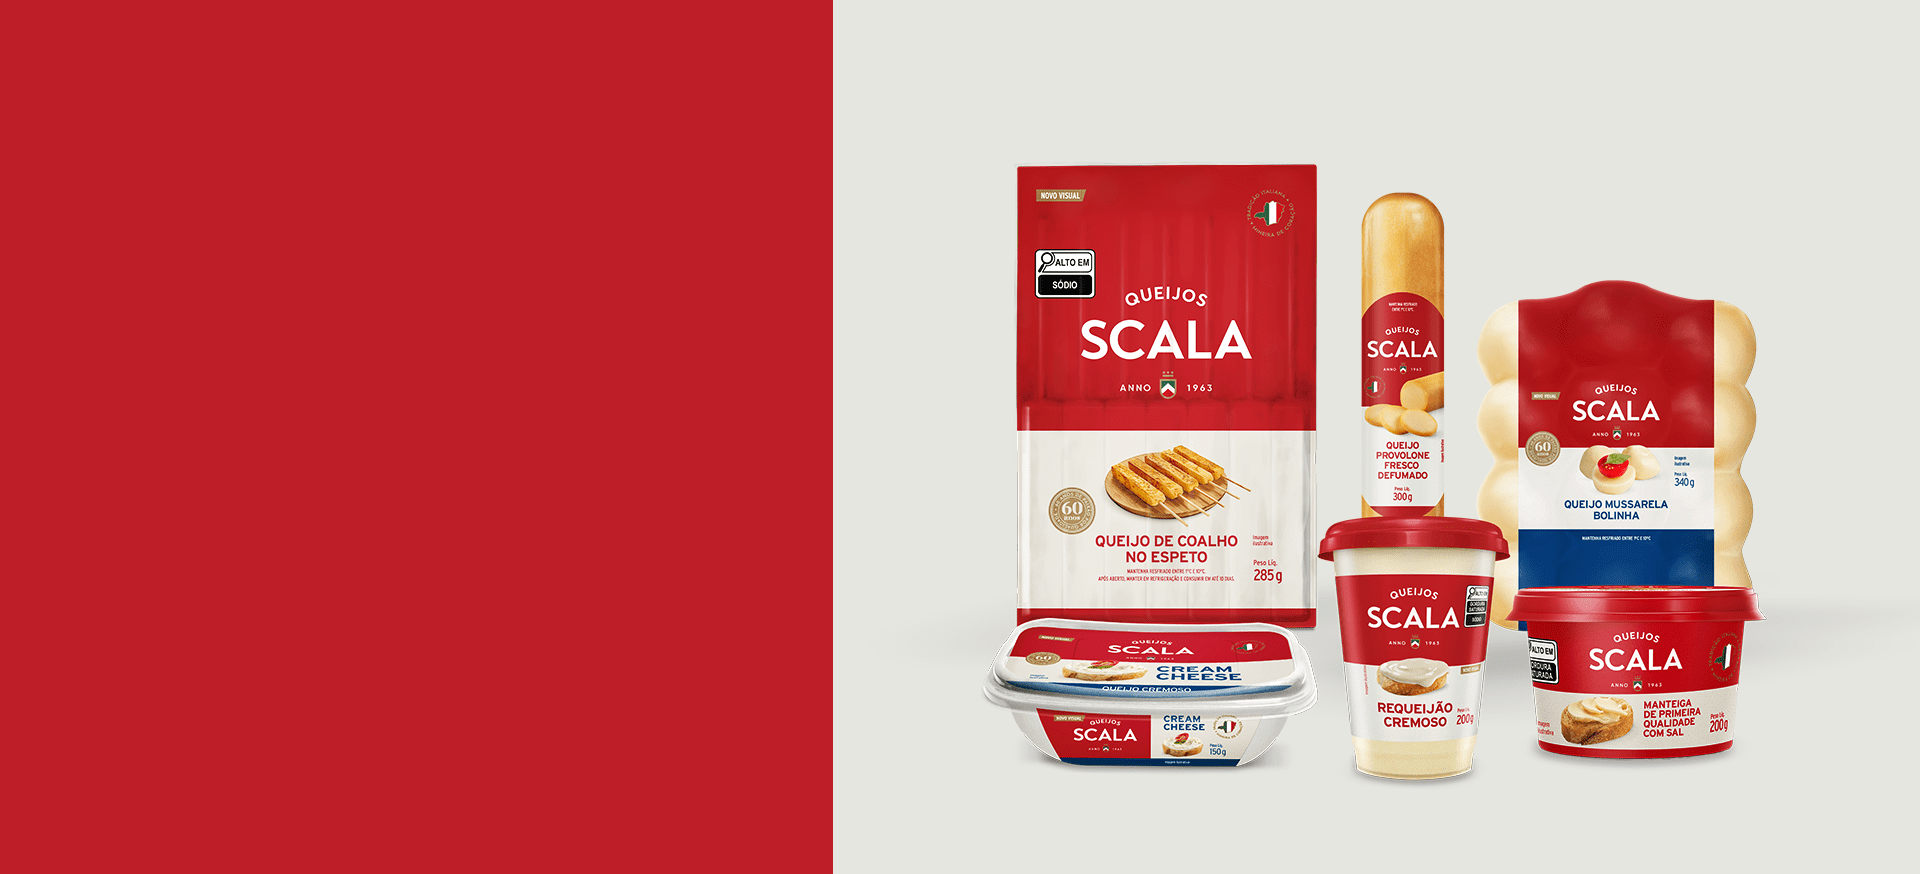 banner de apresentação de produtos Scala para pessoa física